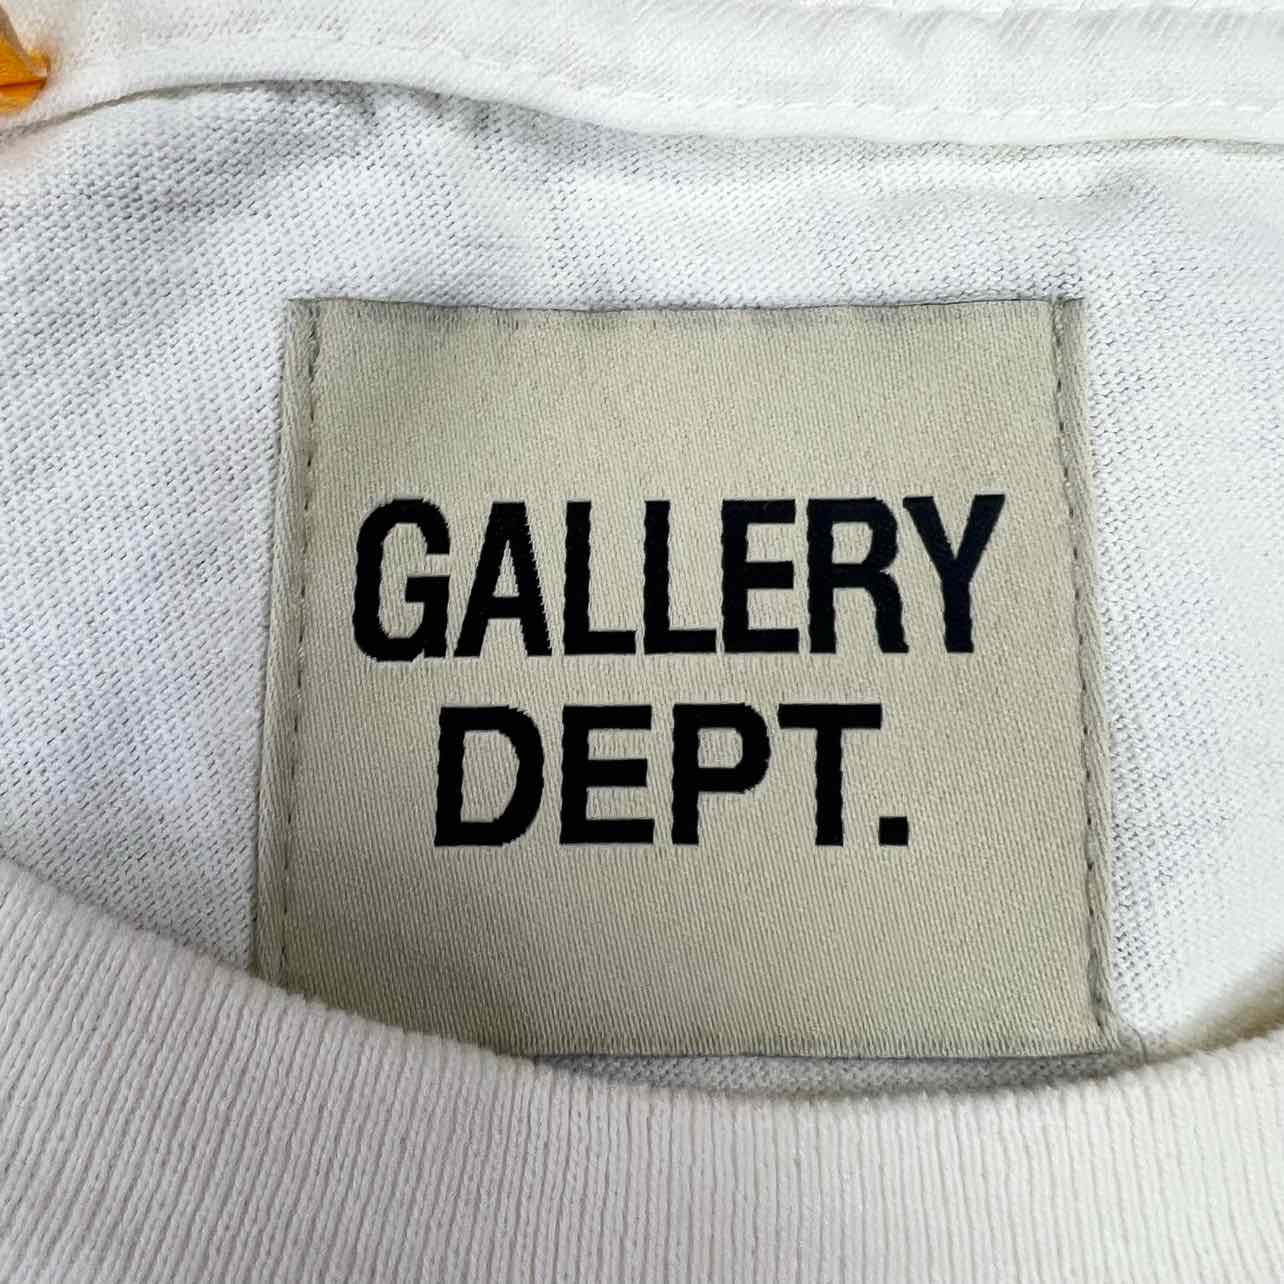 Gallery DEPT. T-Shirt &quot;SOUVENIR&quot; Cream New Size M